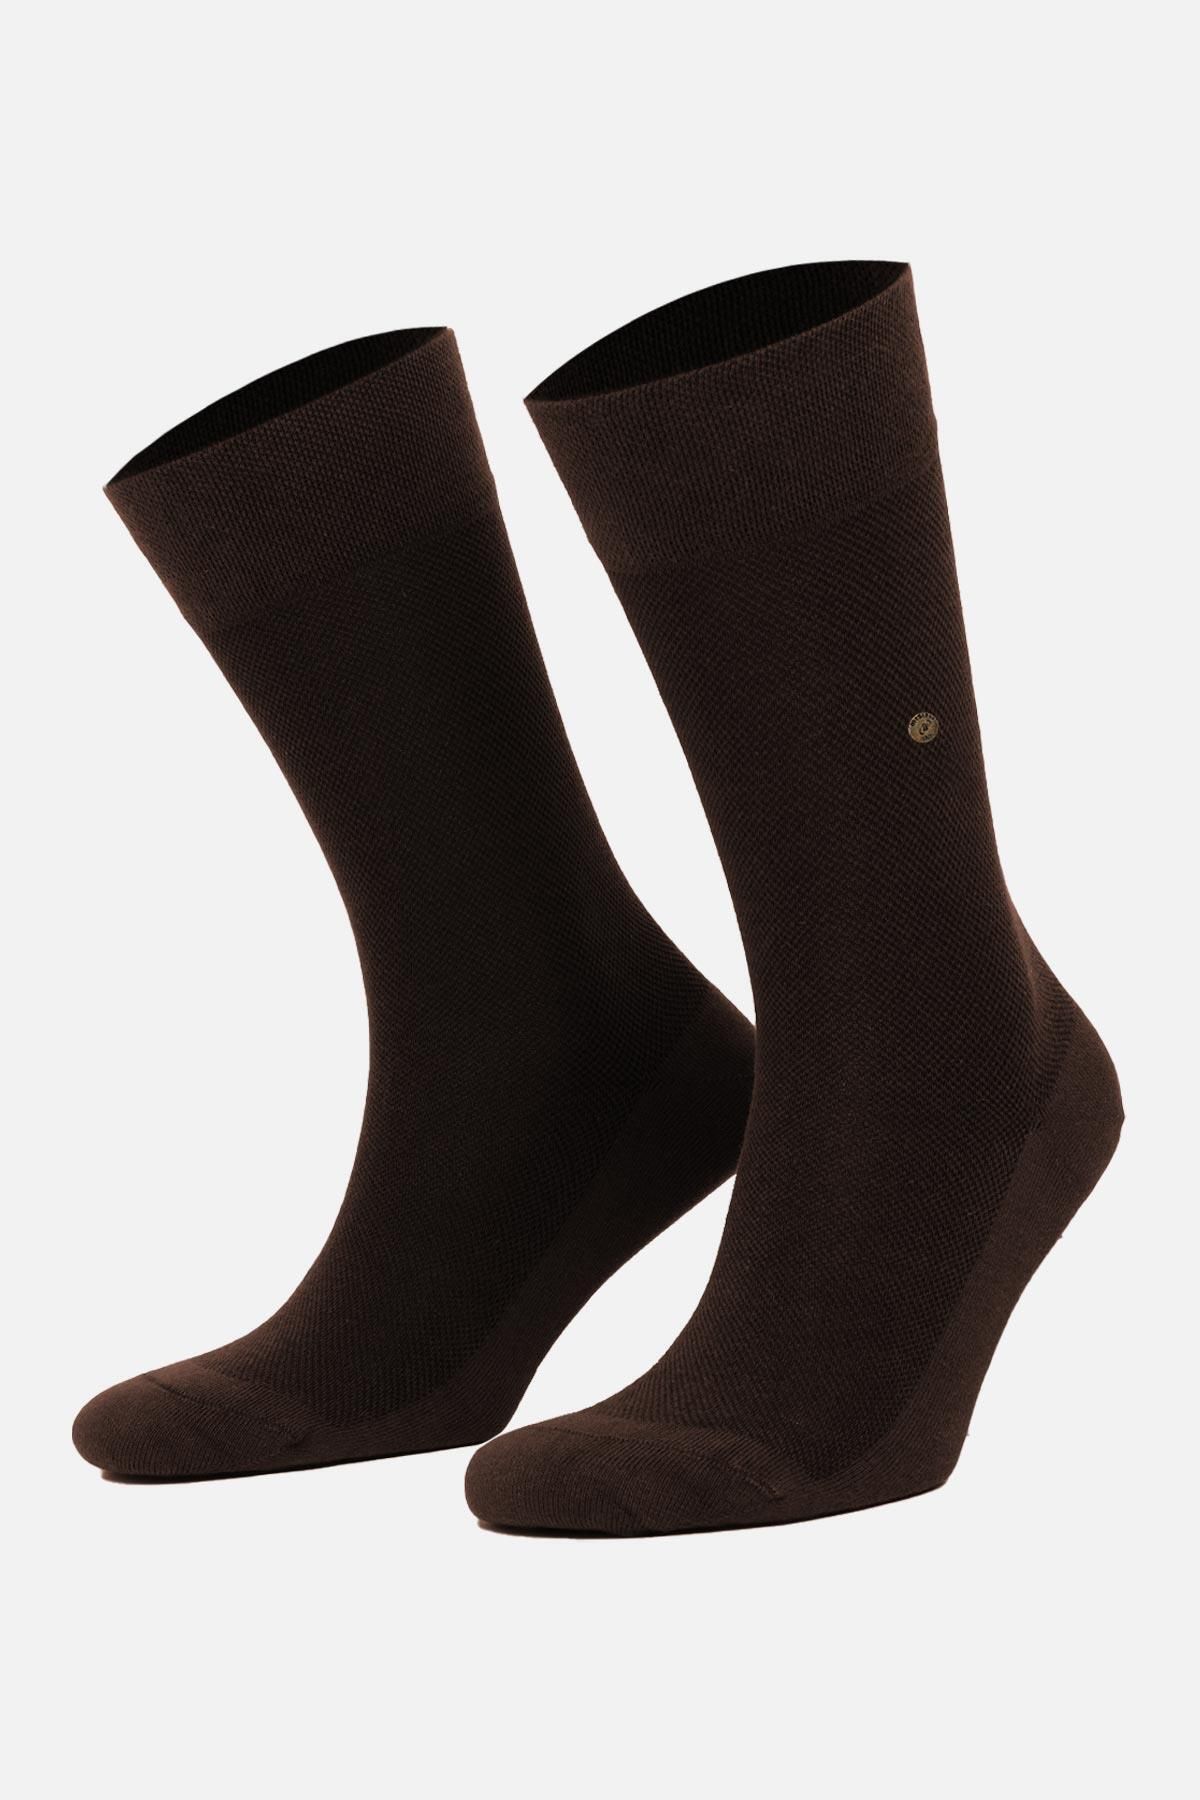 Mısırlı Erkek Organik Pamuklu Kahverengi Tekli Soket Çorap M 60002 Tk